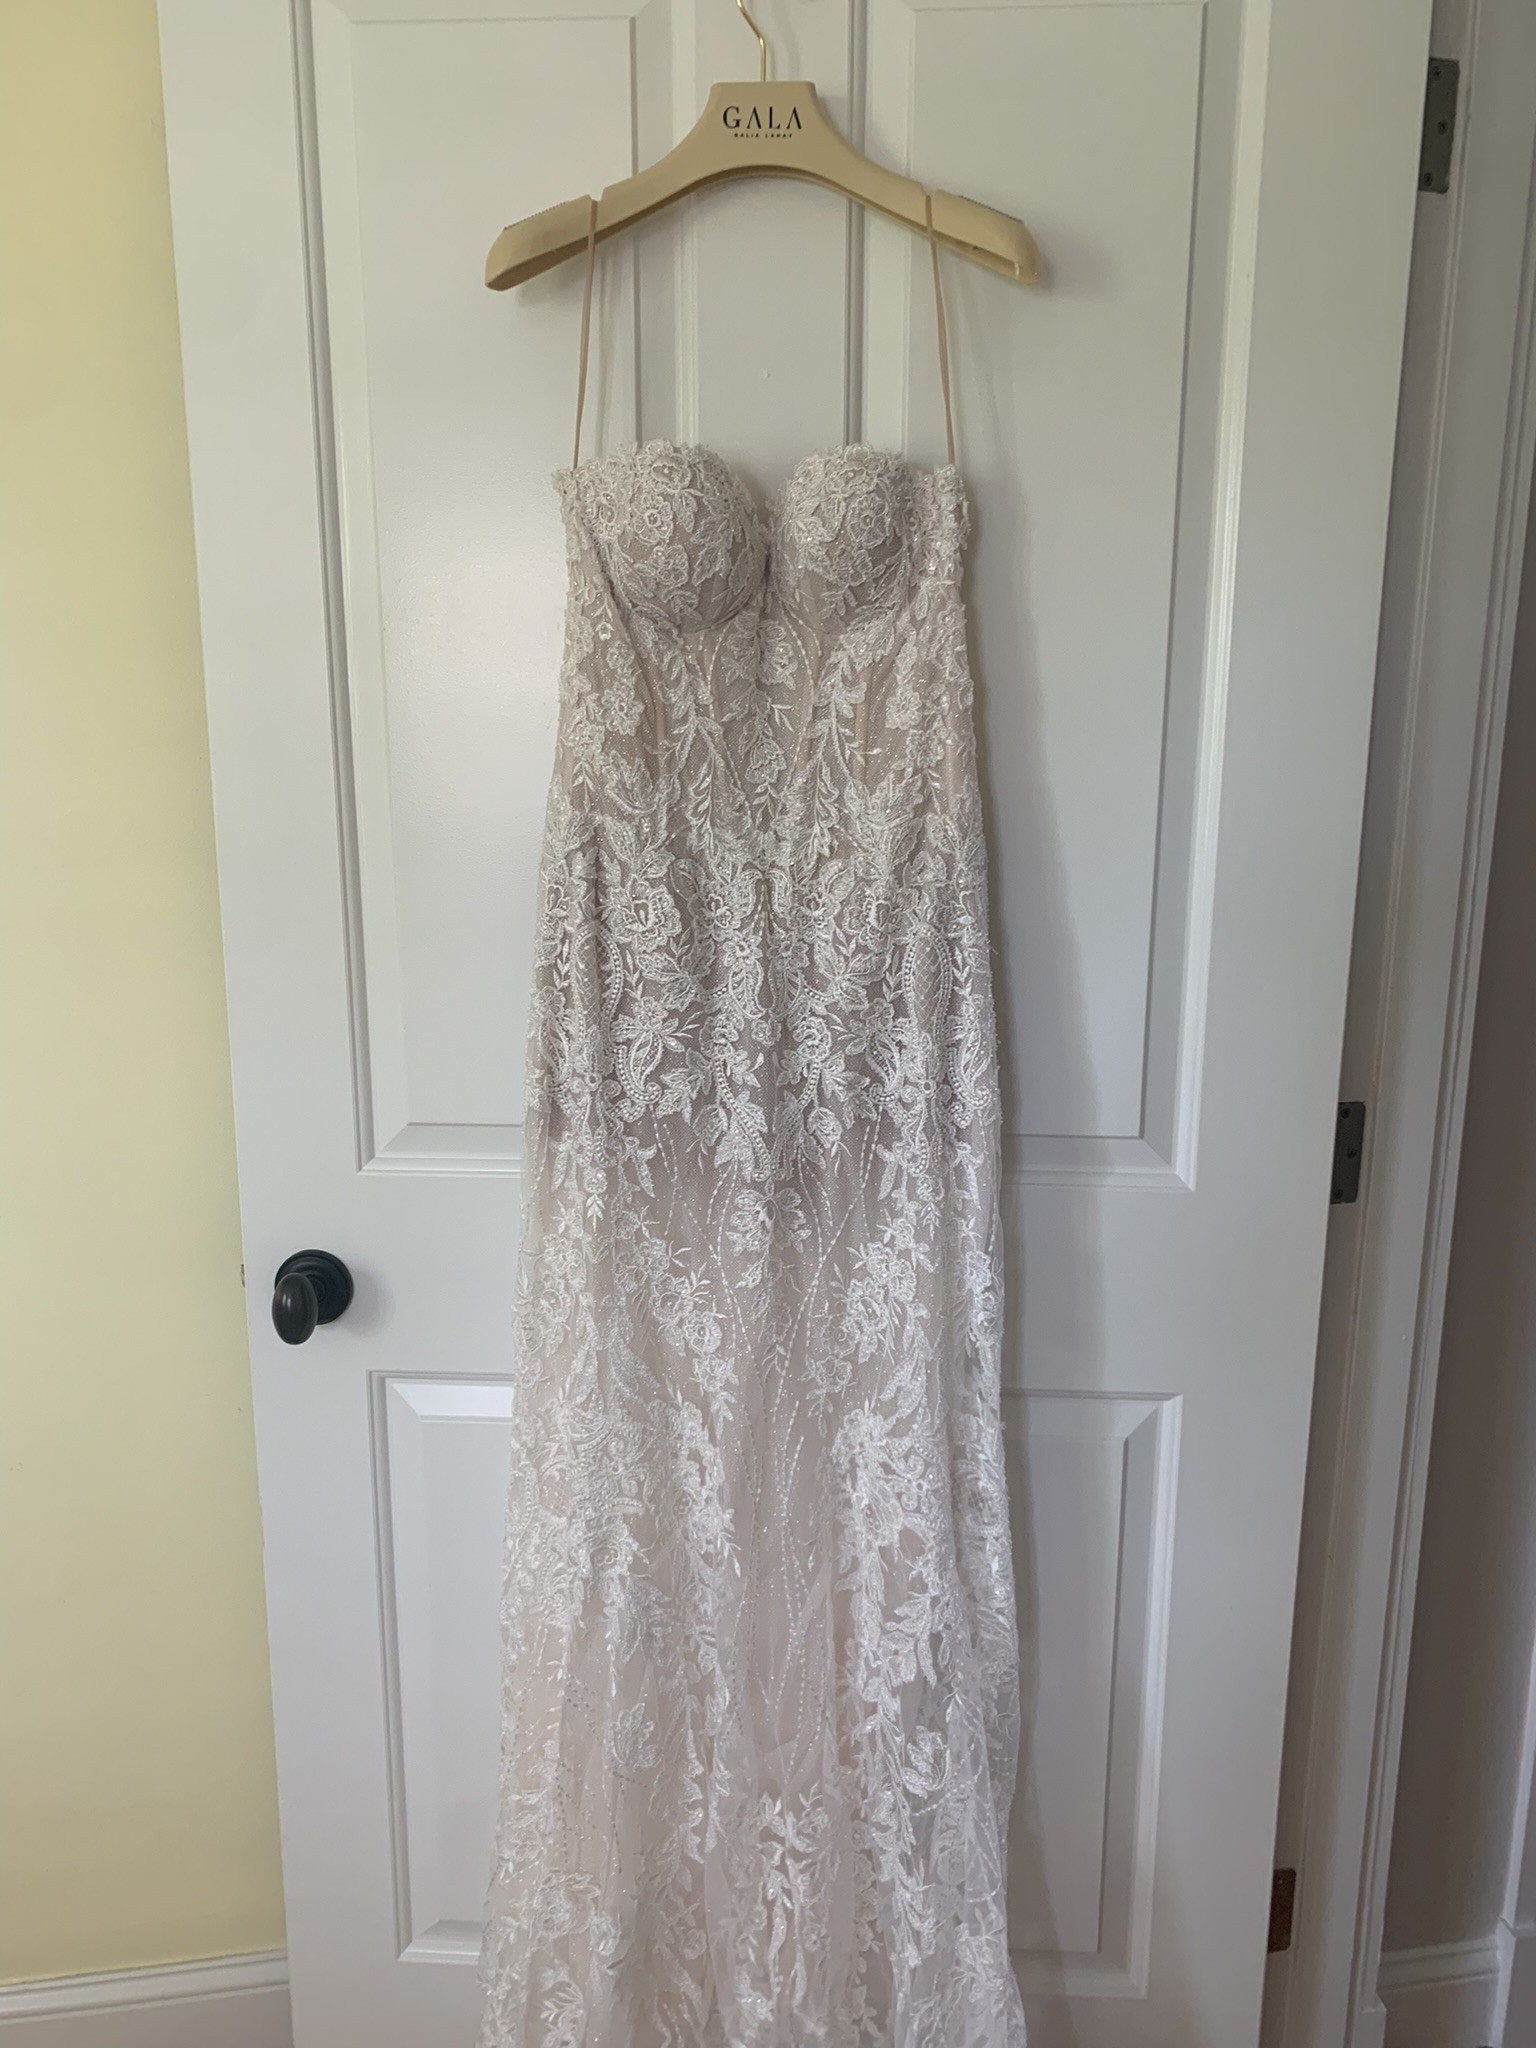 Galia Lahav G305 New Wedding Dress Save 68% - Stillwhite